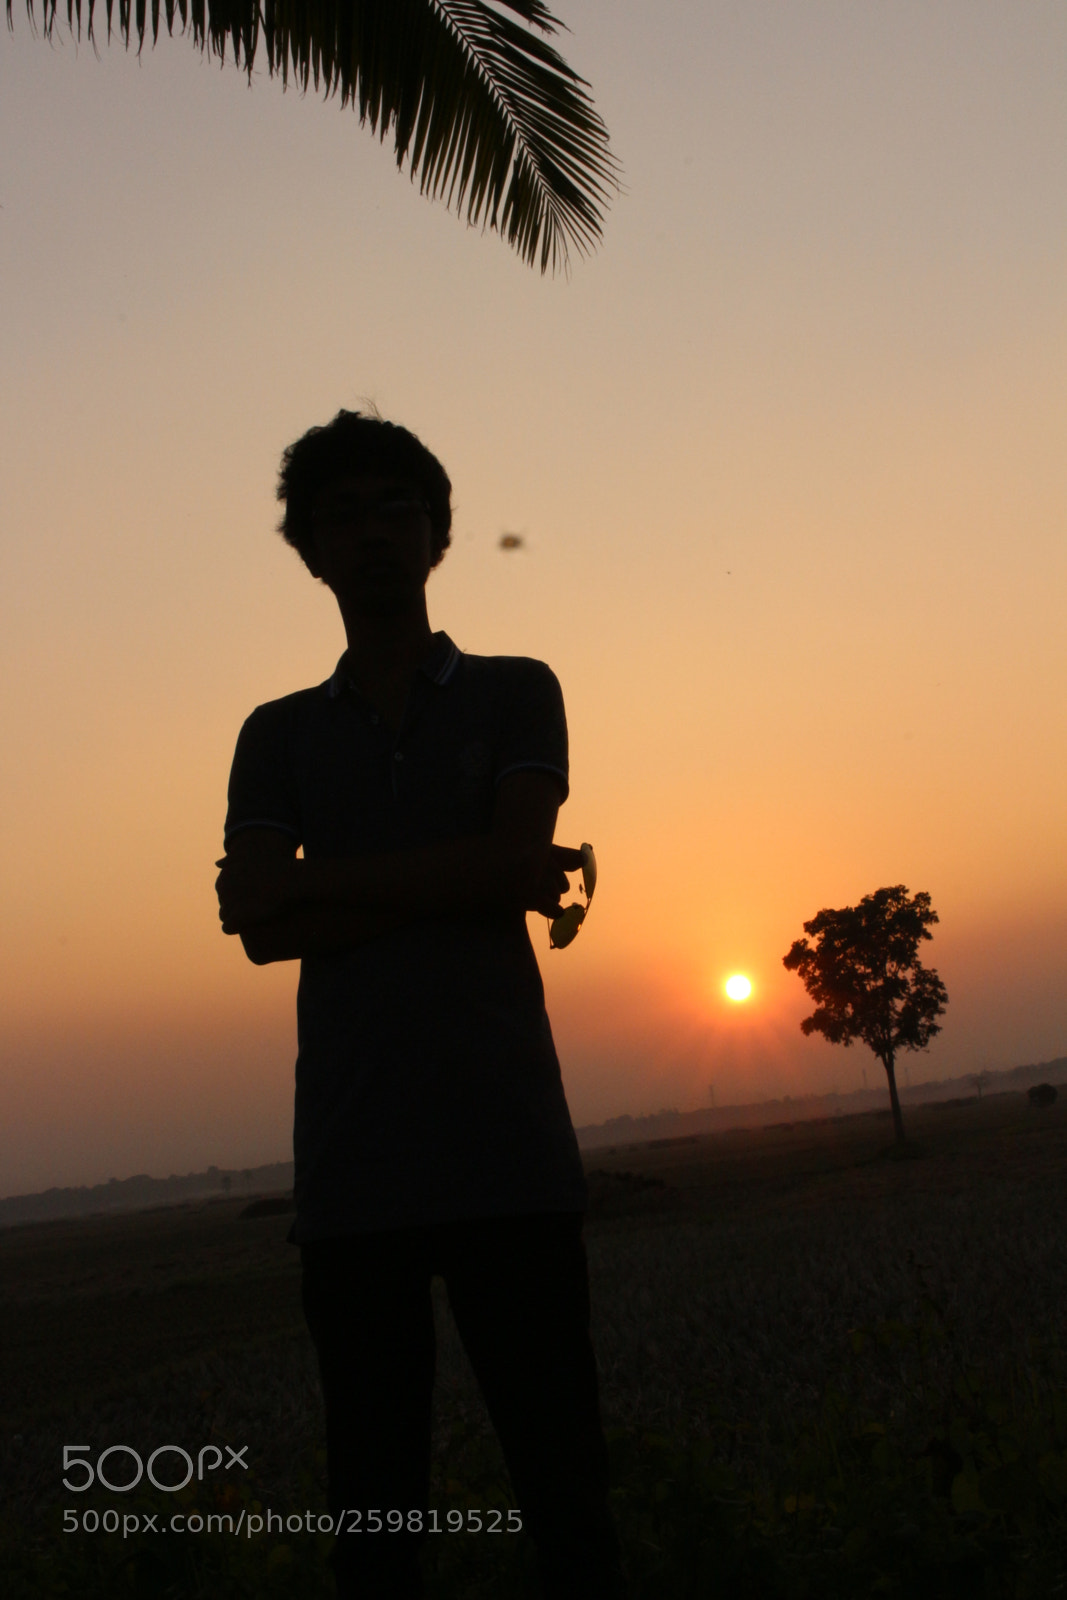 Canon EOS 700D (EOS Rebel T5i / EOS Kiss X7i) sample photo. Beautiful sunrise photography